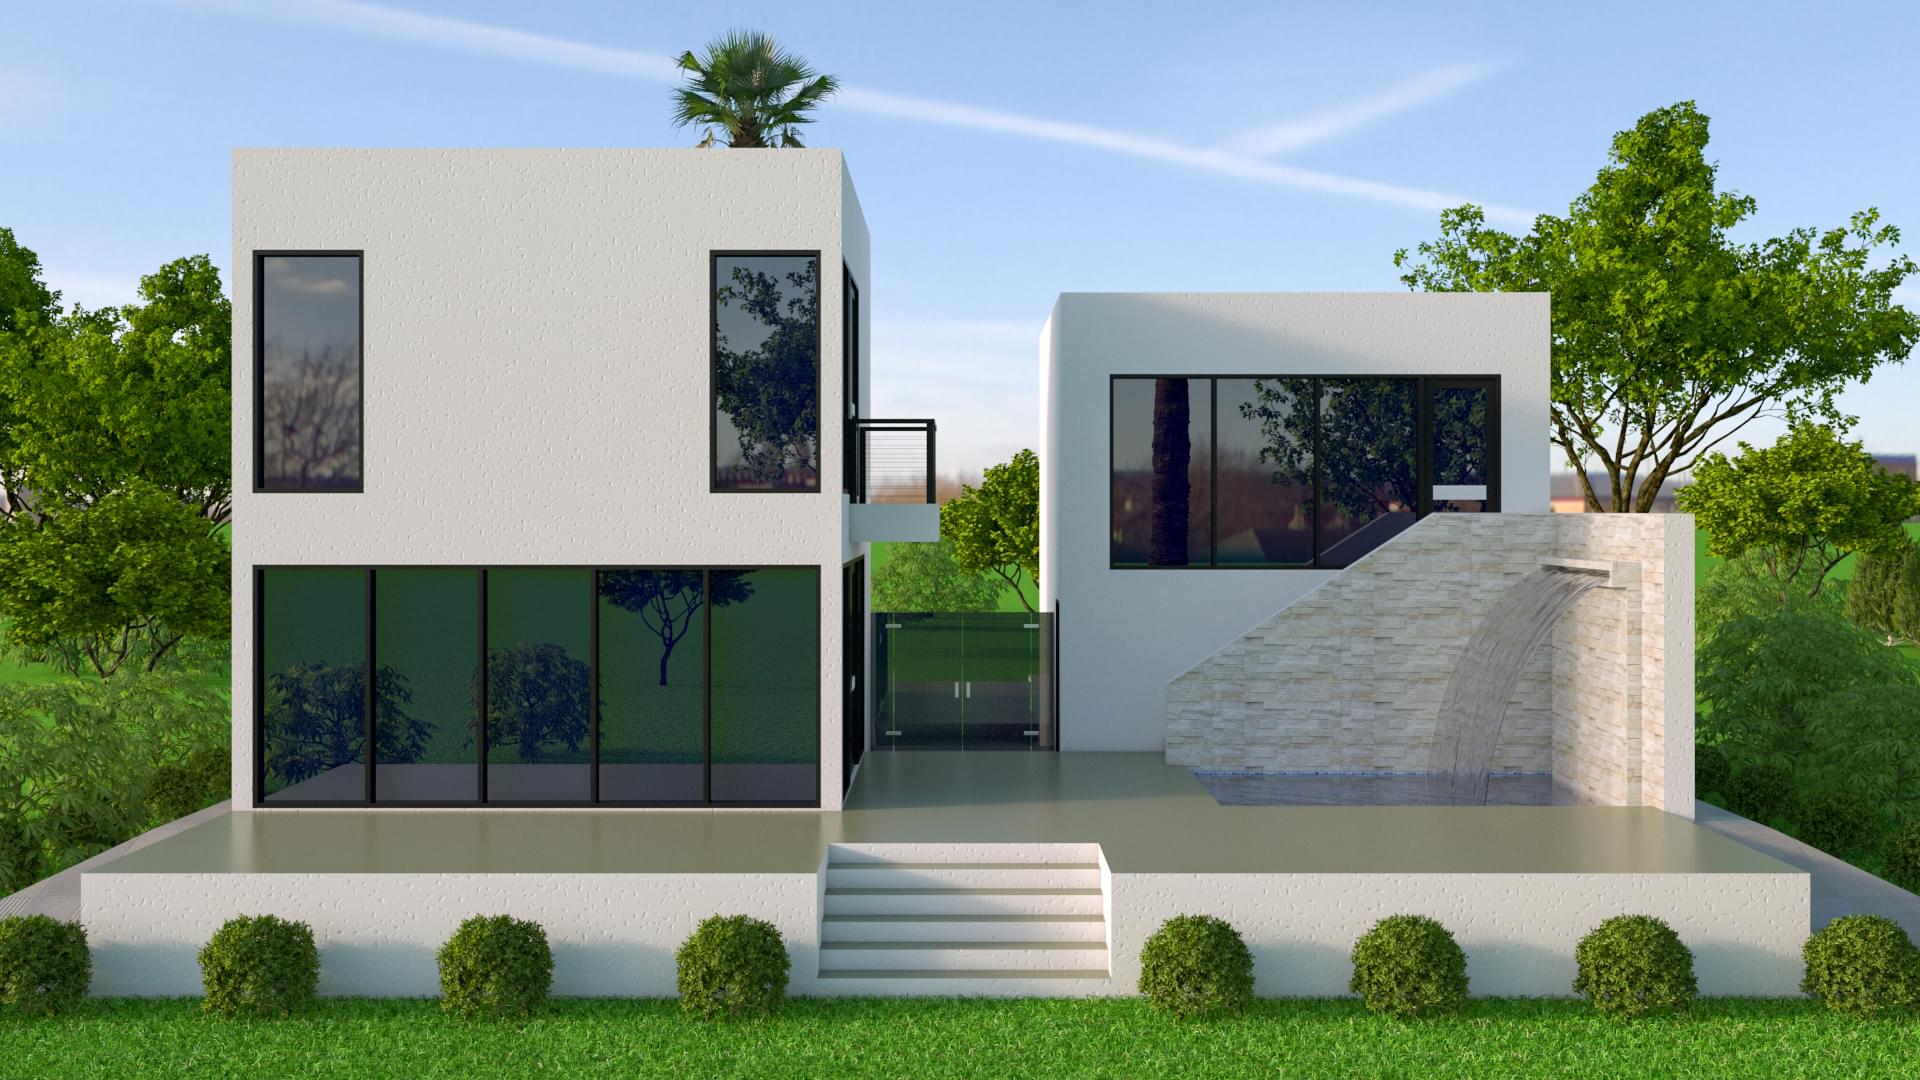 Avantgarde Design Home Builders Florida Saint Lucia Front View